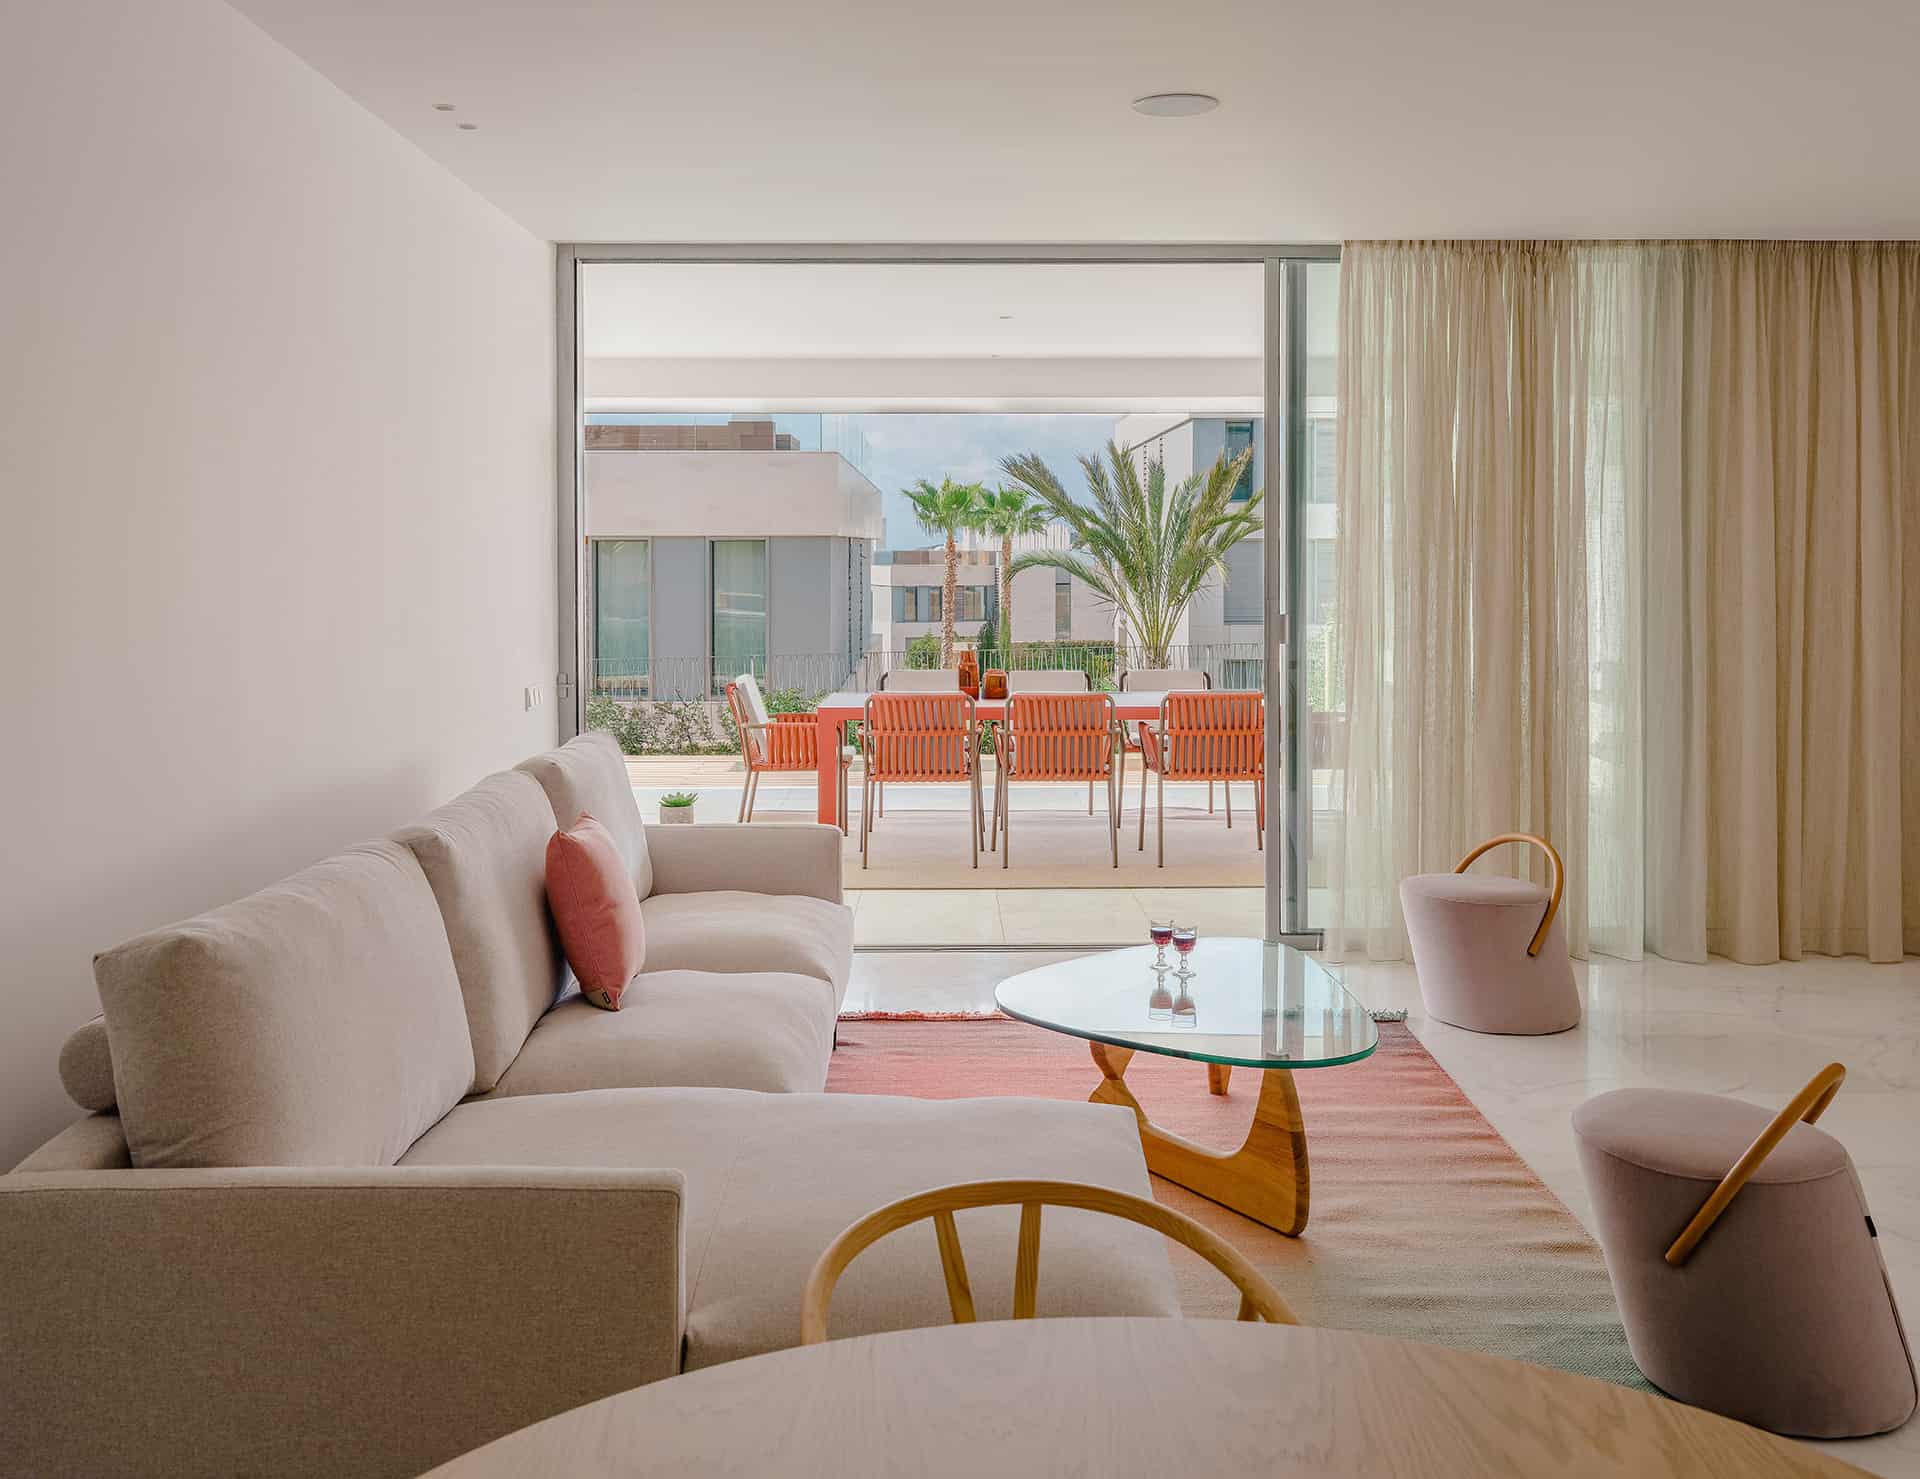 Interiores con esencia mediterránea Comodidad, calidez y conveniencia en cada uno de los espacios reflejan el espíritu de vida ibicenco.Ampliar